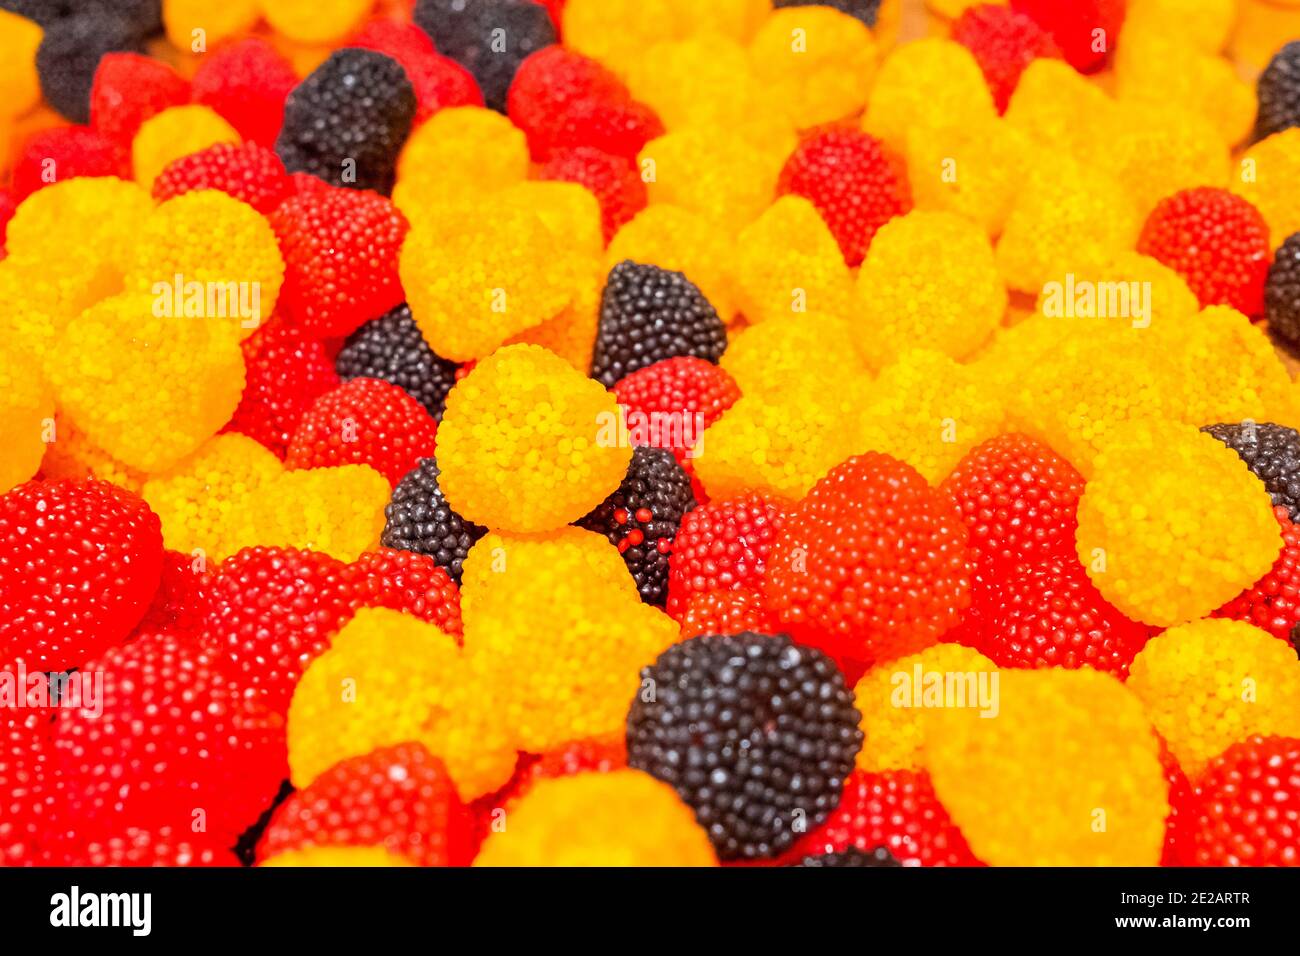 Leuchtend gelbe, schwarze und rote Marmelade, die Süßigkeiten in Form von  Beeren kaut. Süße schöne Delikatesse aus Gel Fruchtsäften. Farbenfroh  Stockfotografie - Alamy